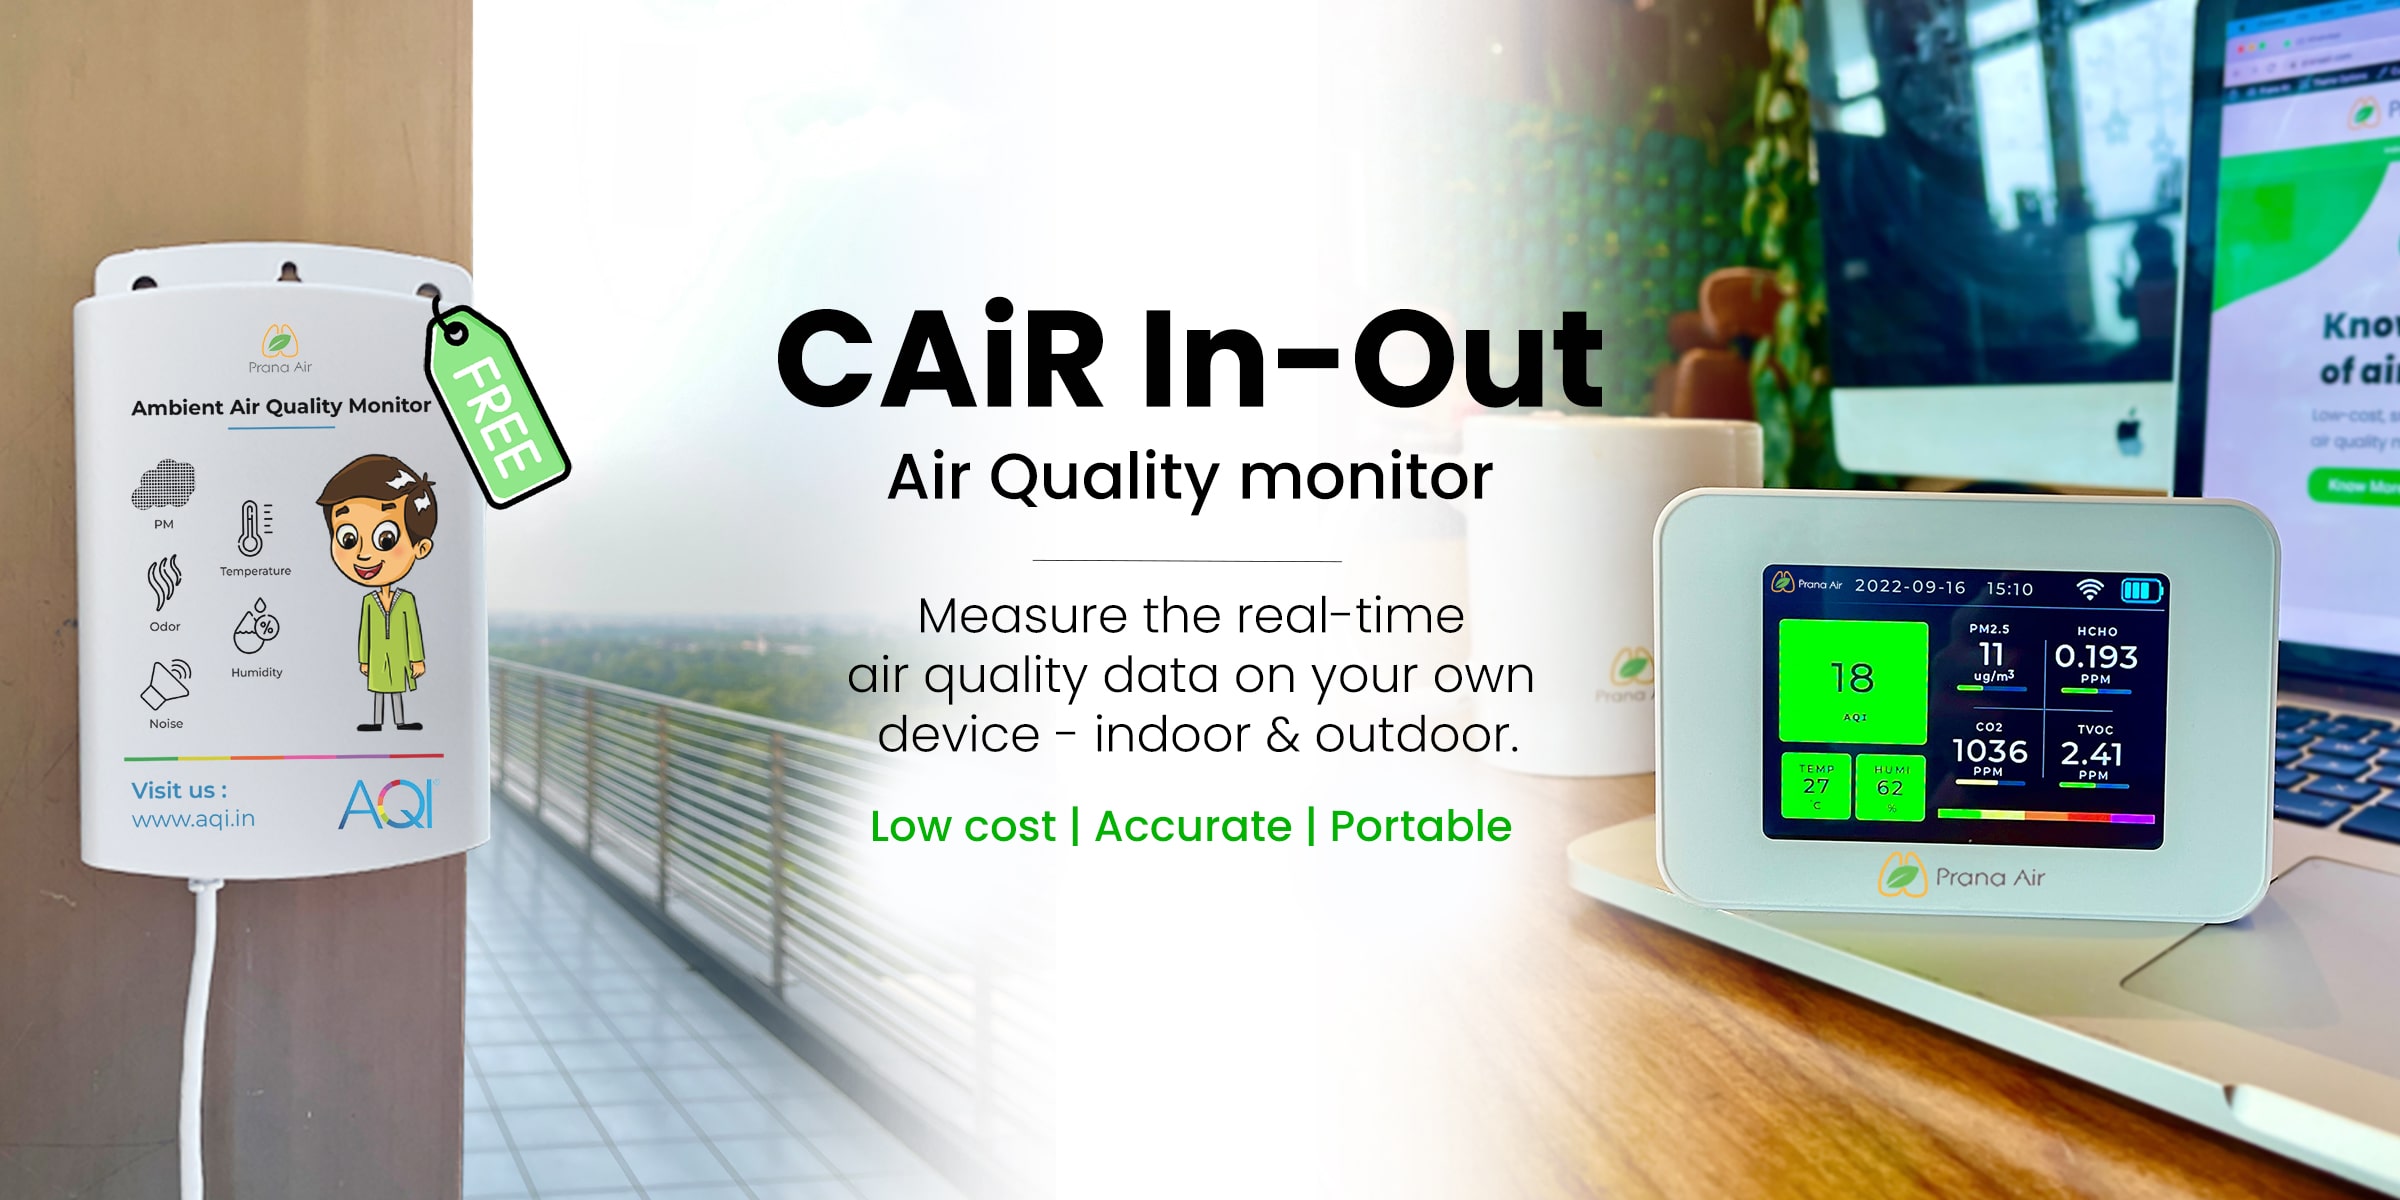 pre-book prana air cair in out air quality monitor